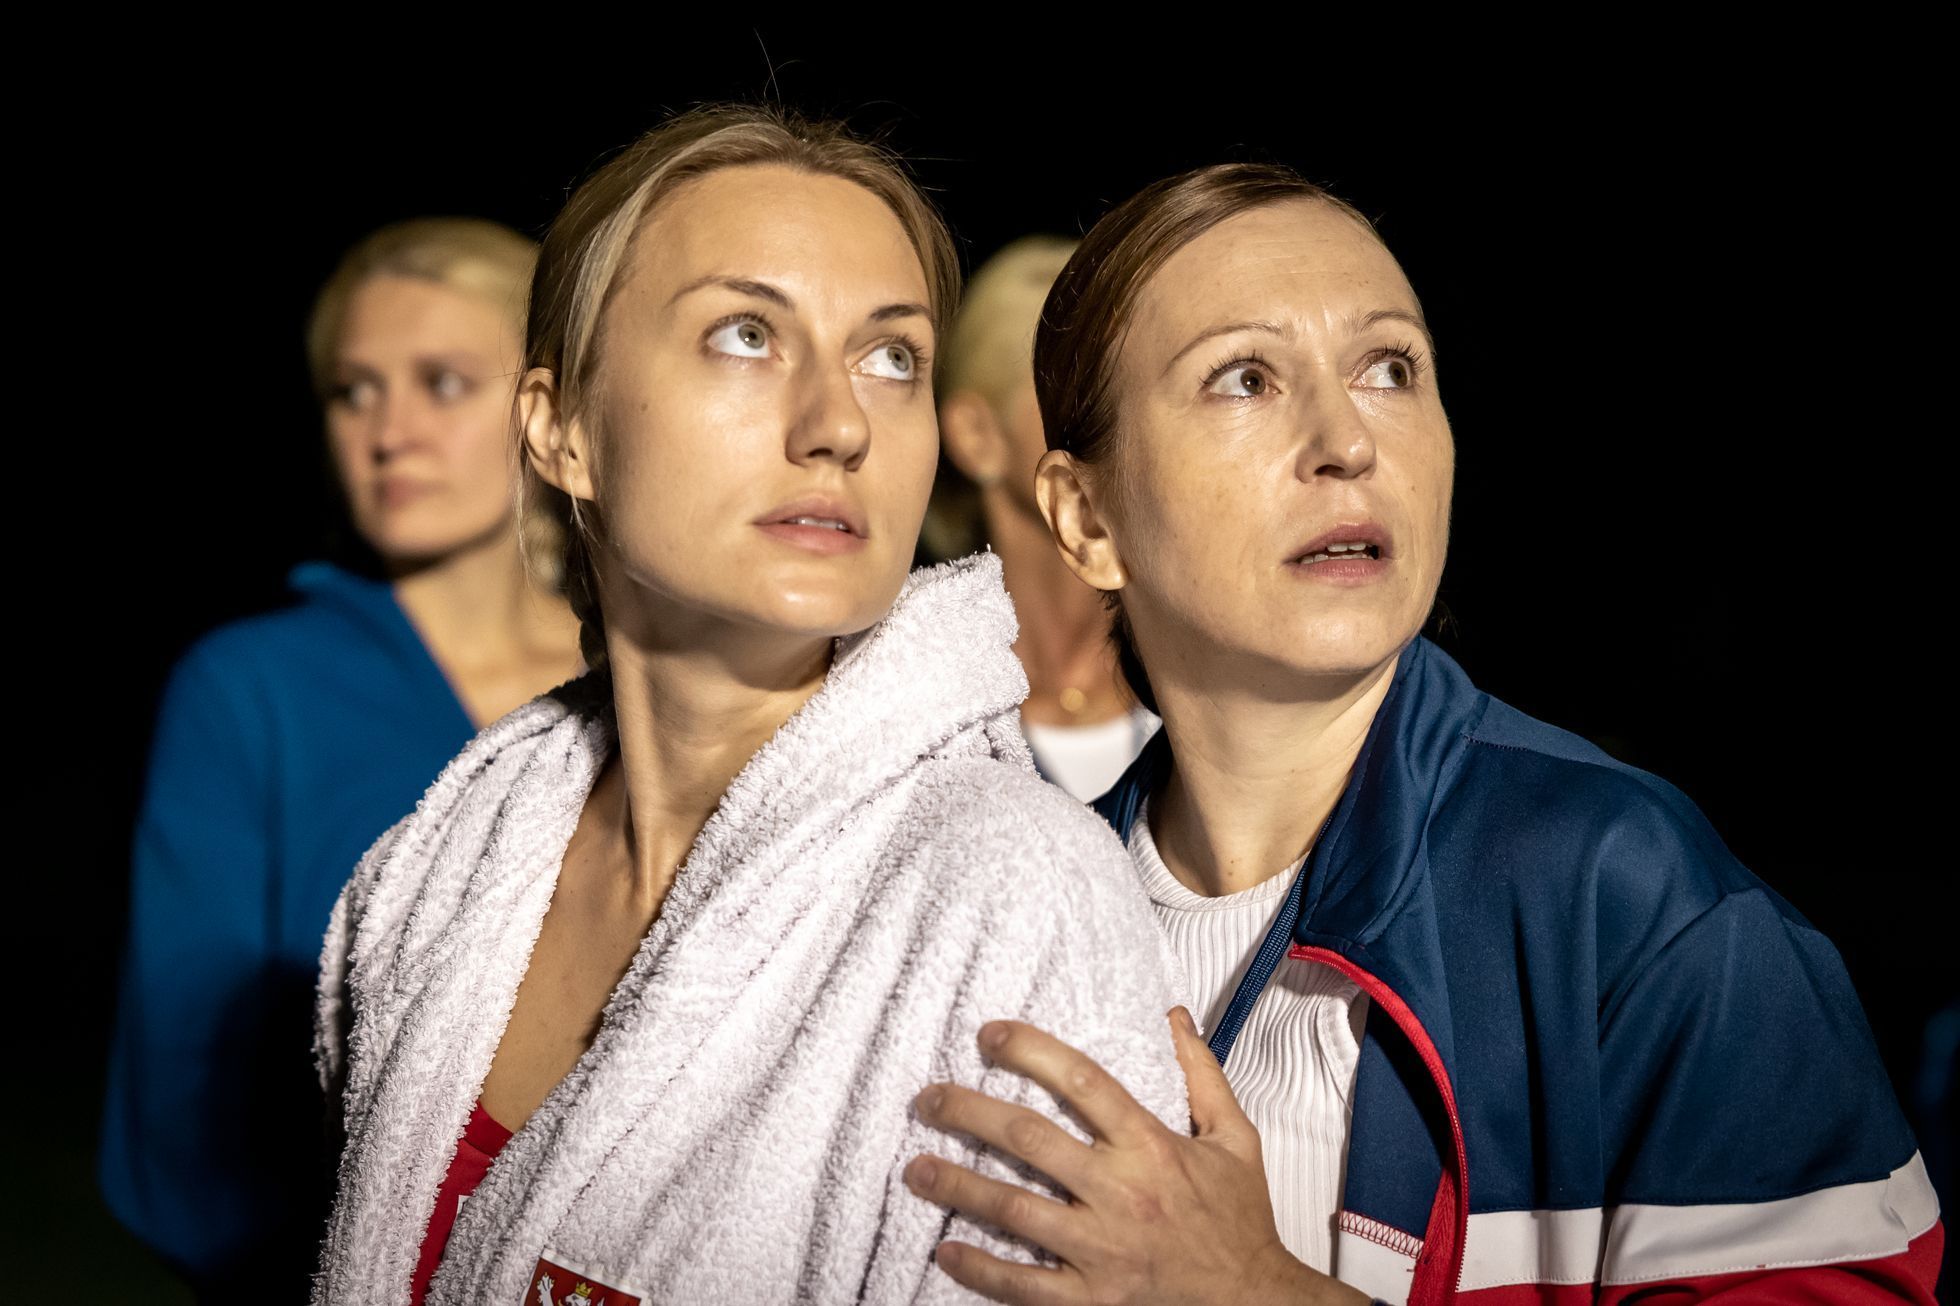 Herečky Natália Germáni a Zuzana Stivínová na fotce z filmu Její tělo.